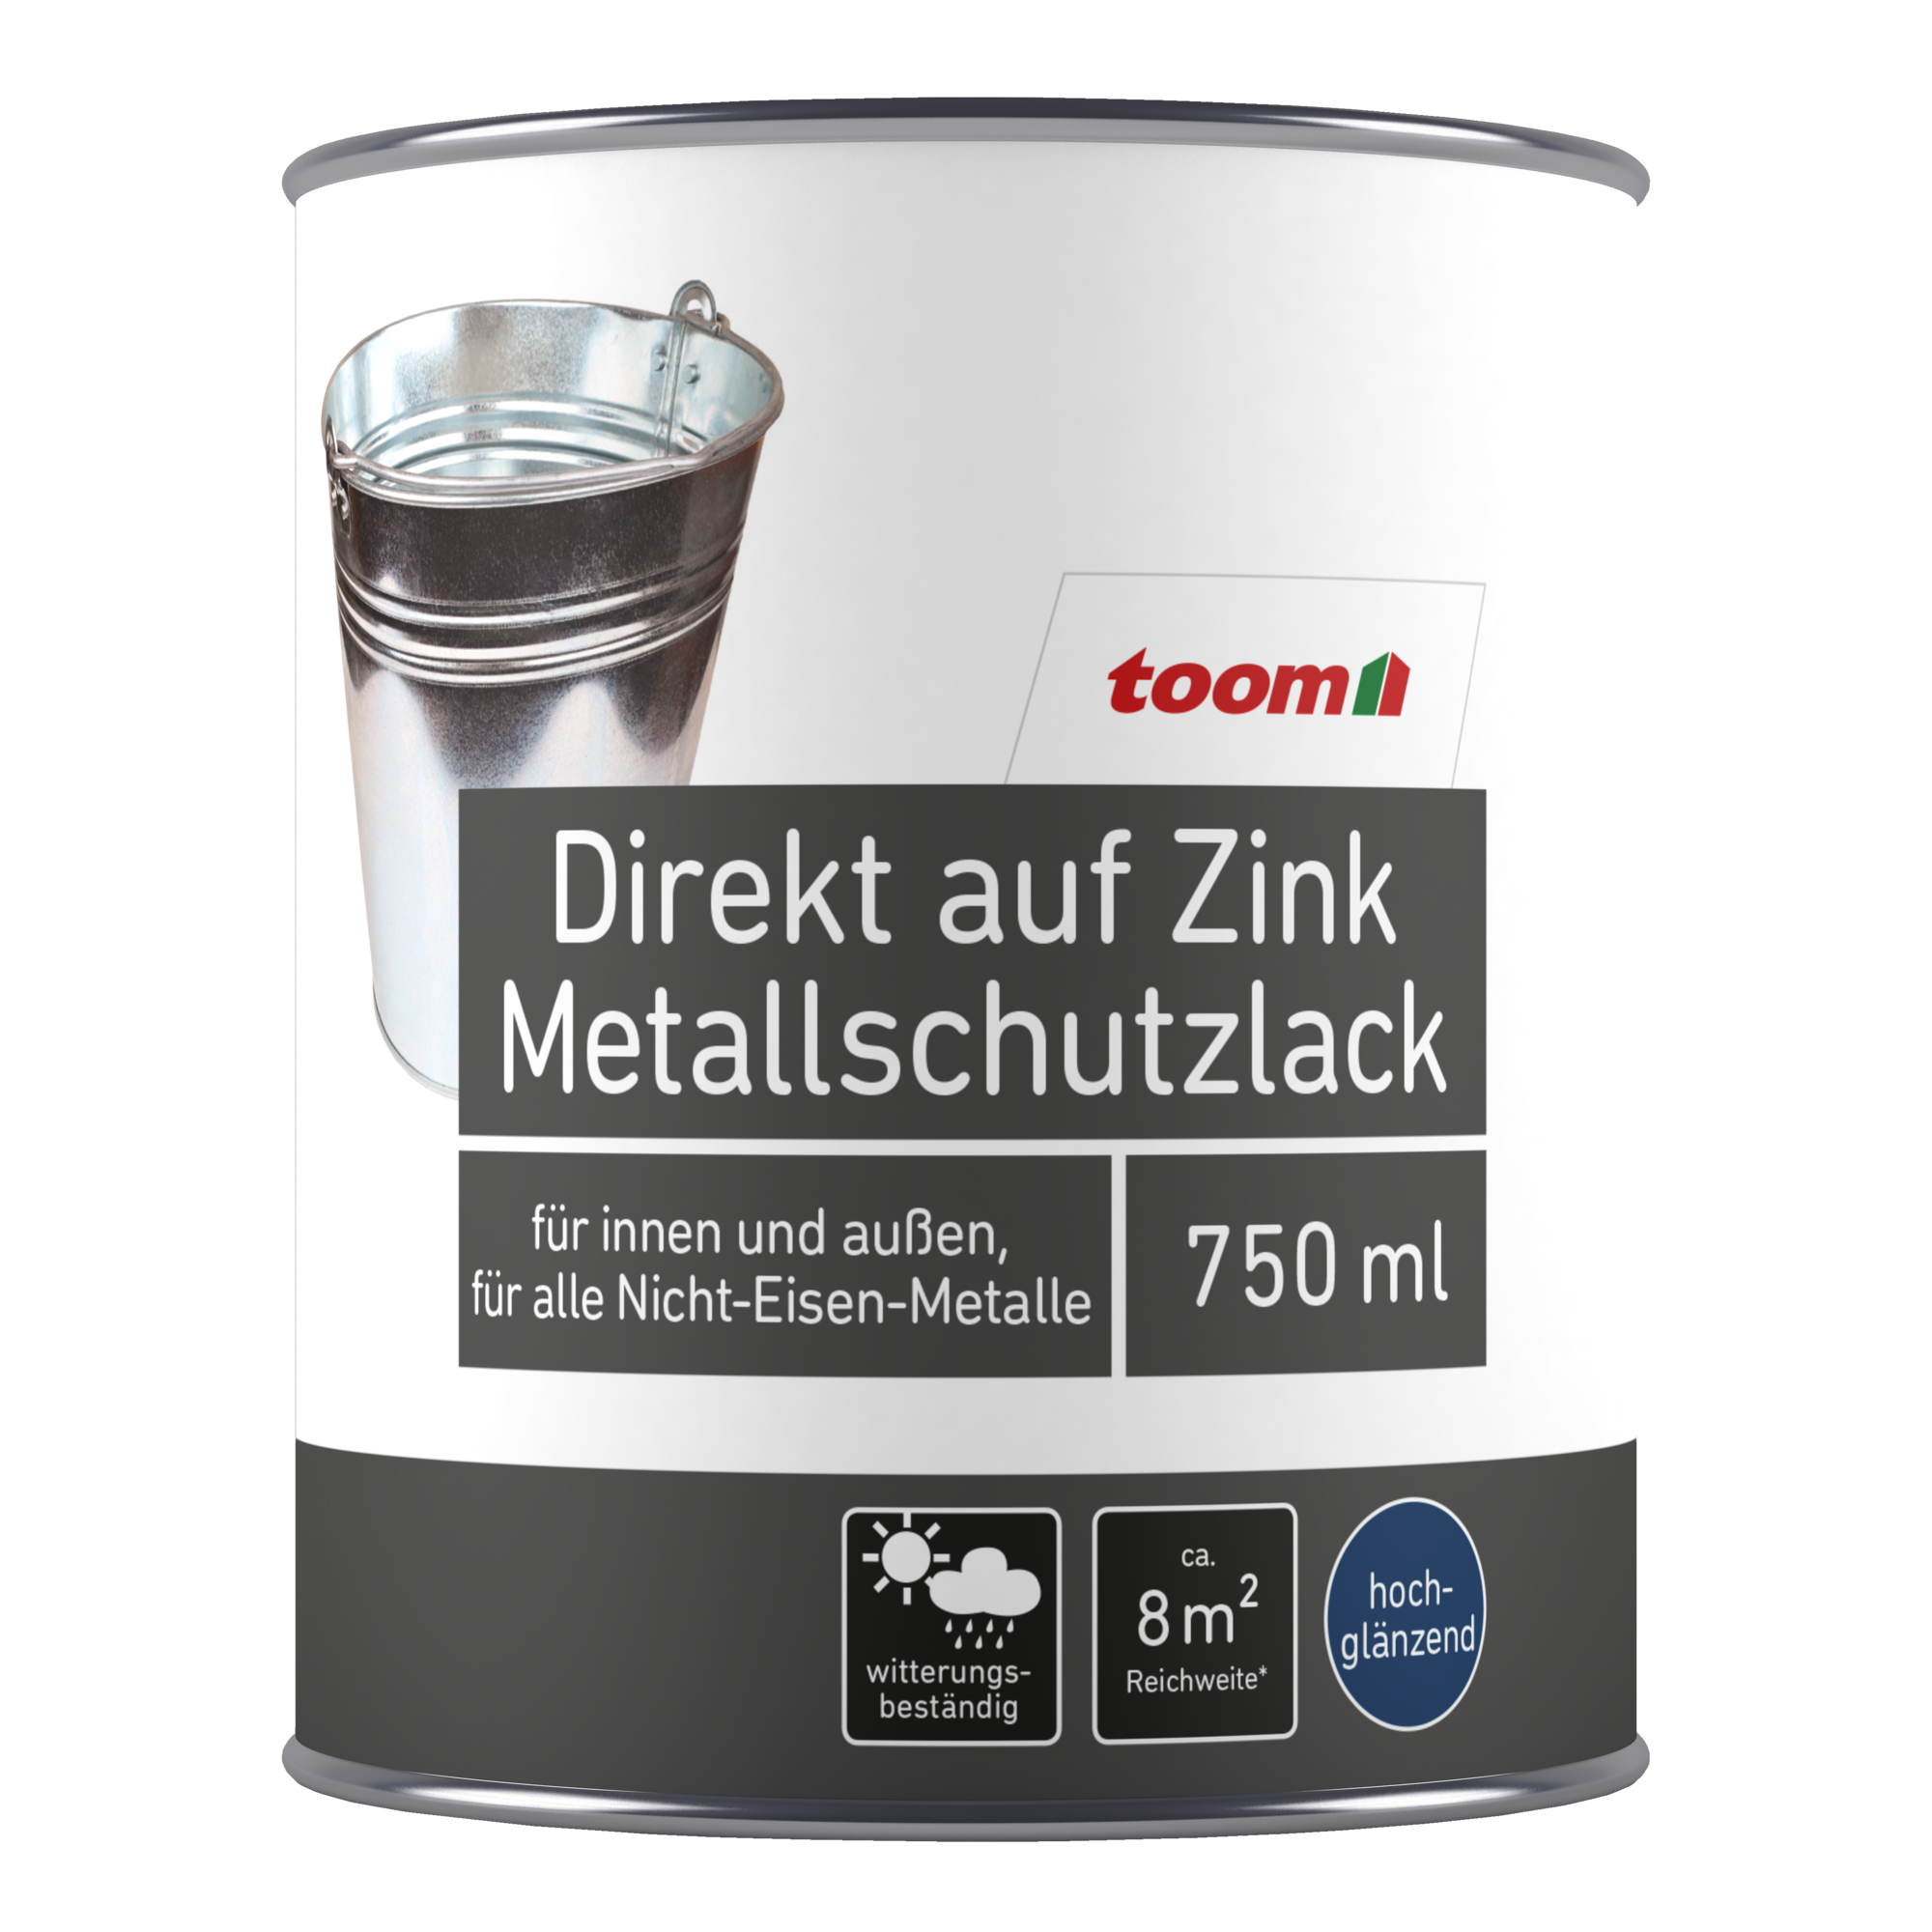 Metallschutzlack braun glänzend 750 ml + product picture